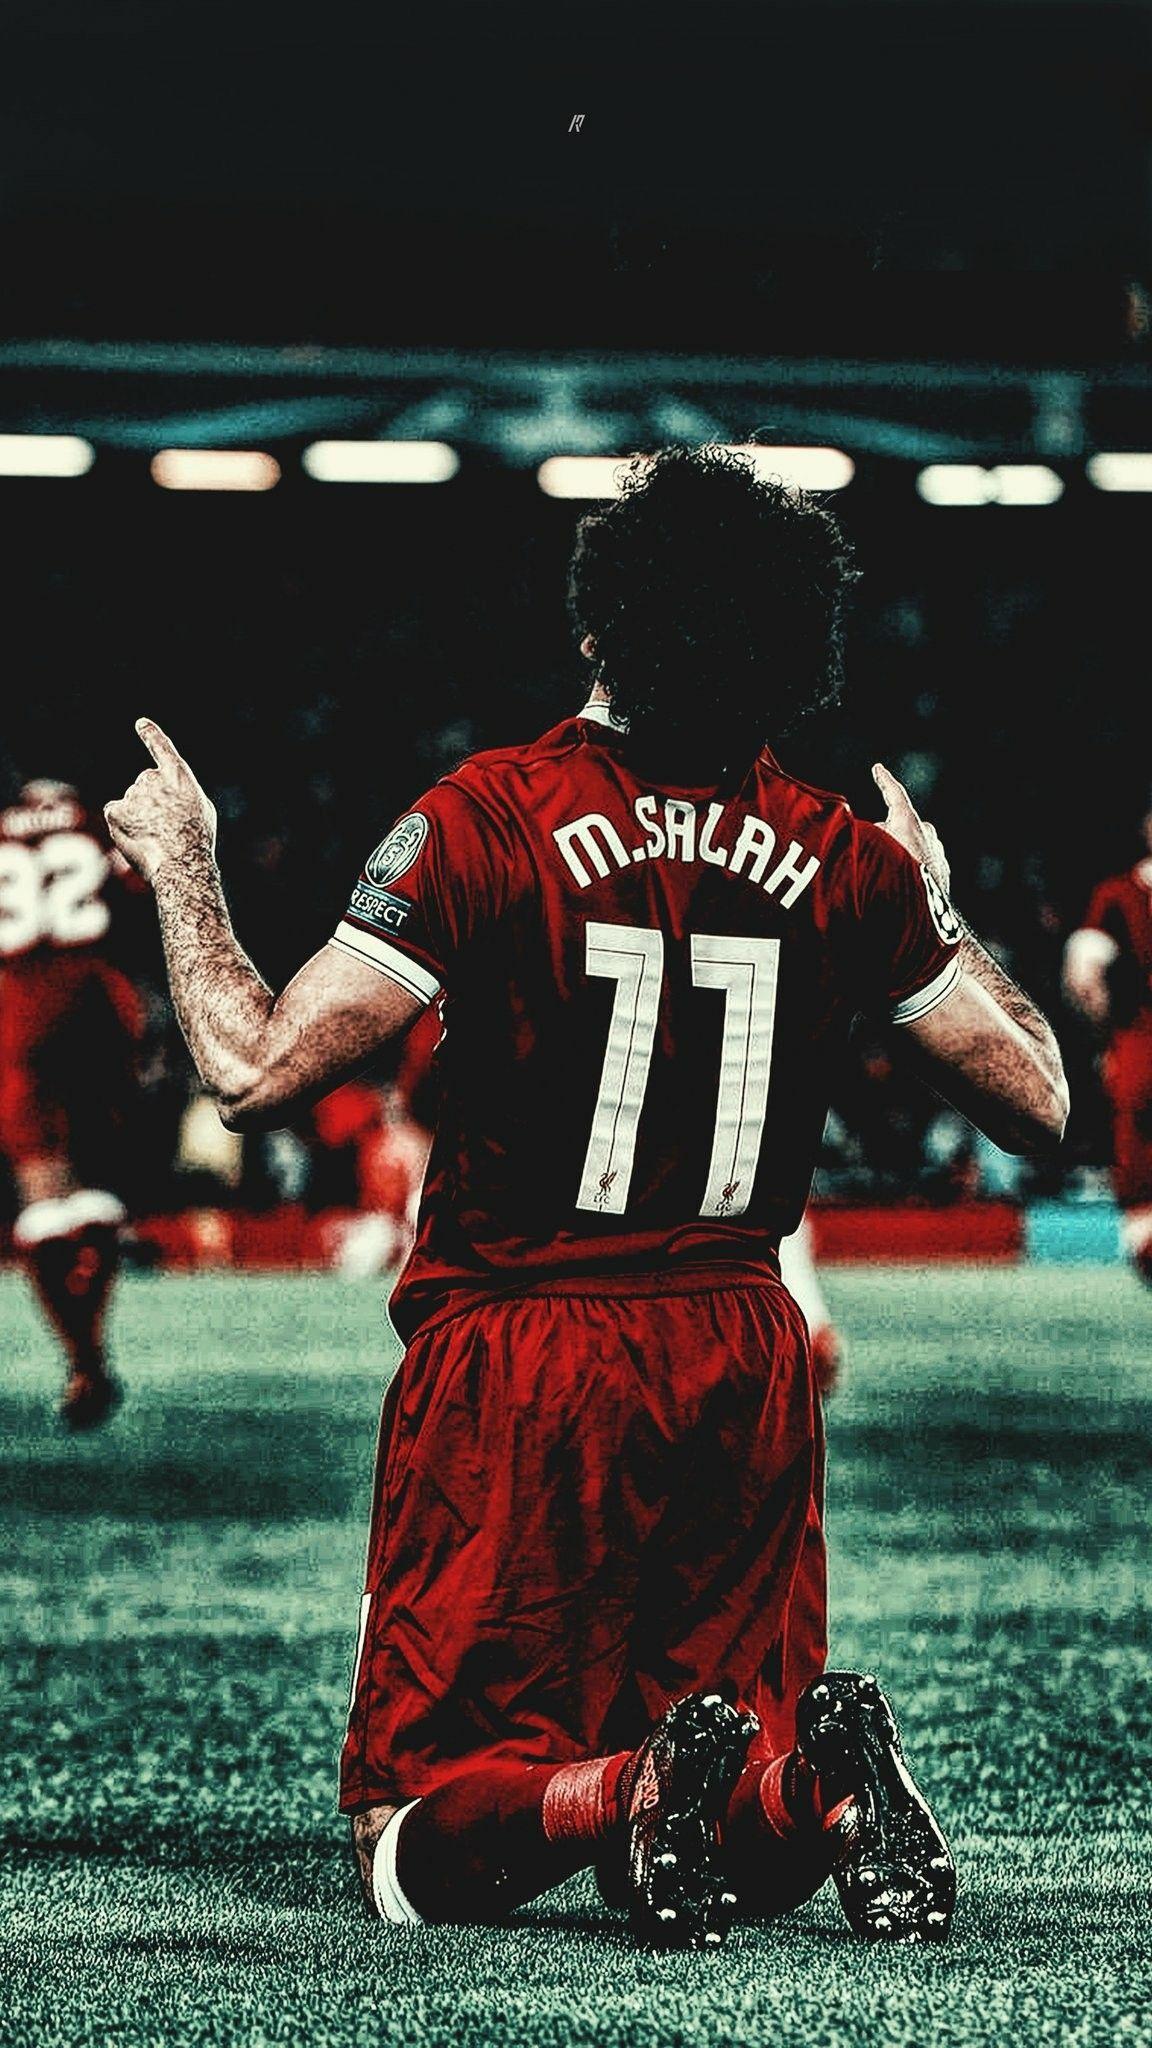 Mohamed Salah -s. Mo Salah. Football players